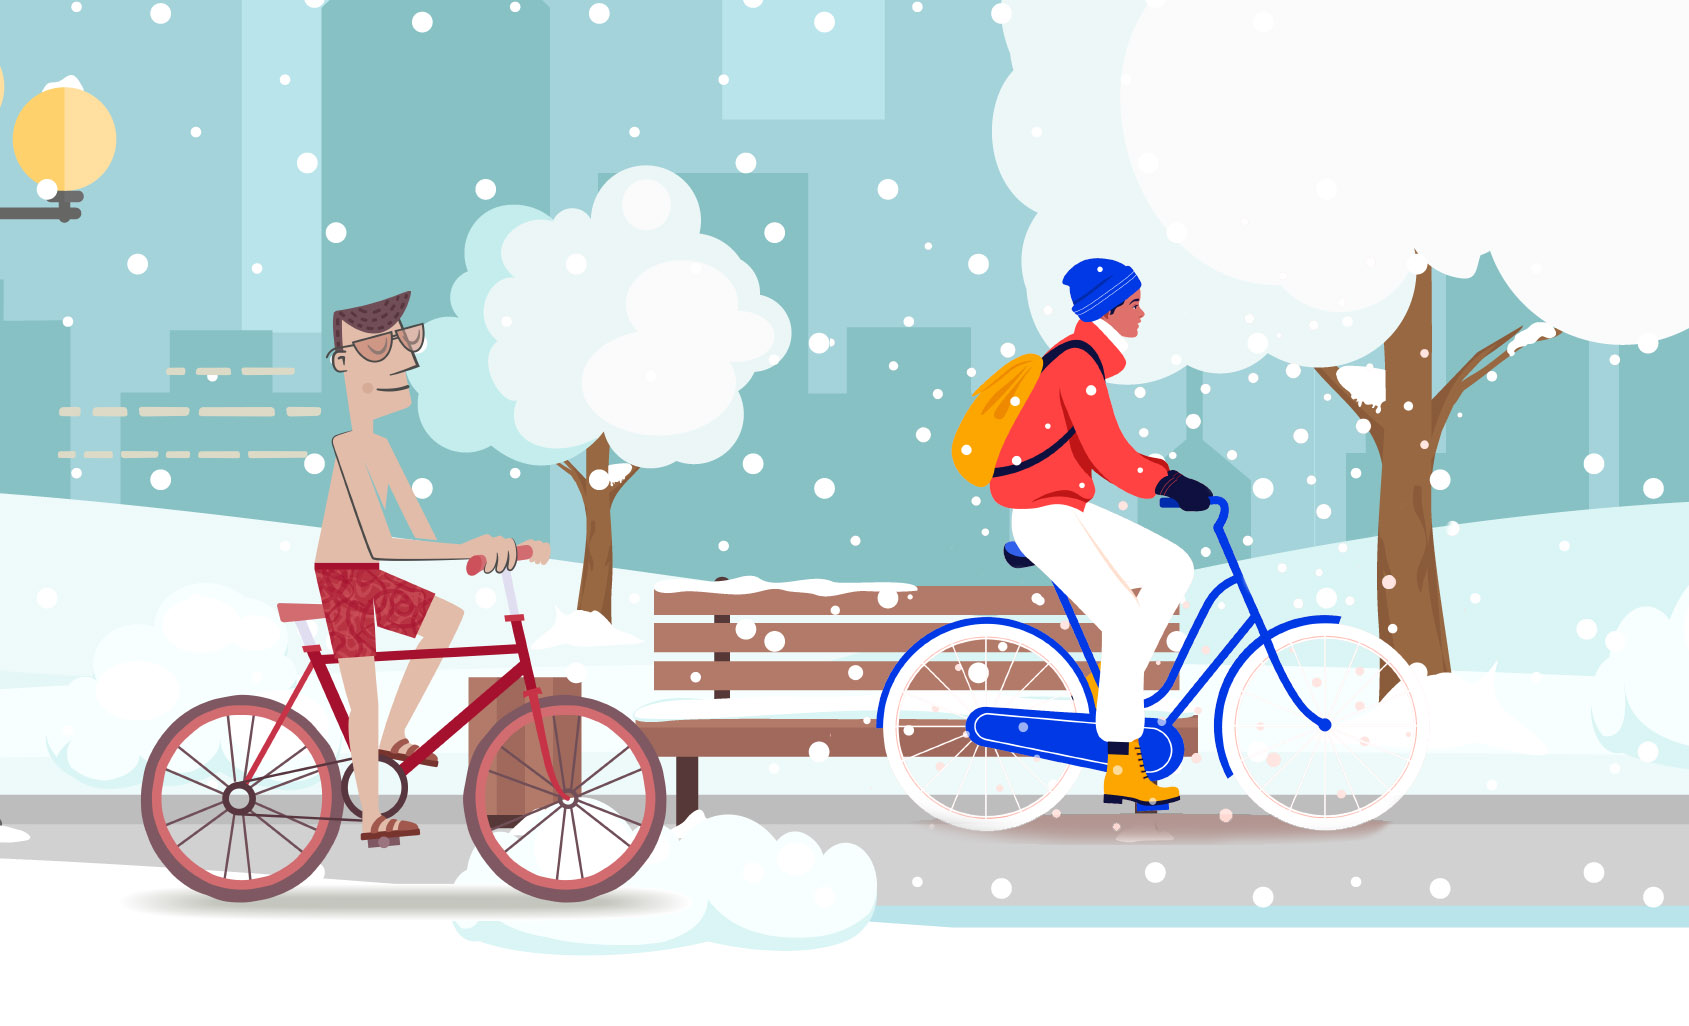 Piirroskuva, jossa kaksi miestä ajaa polkupyörällä talvella: toinen uimapuvussa, toinen kunnollisissa talvivaatteissa.